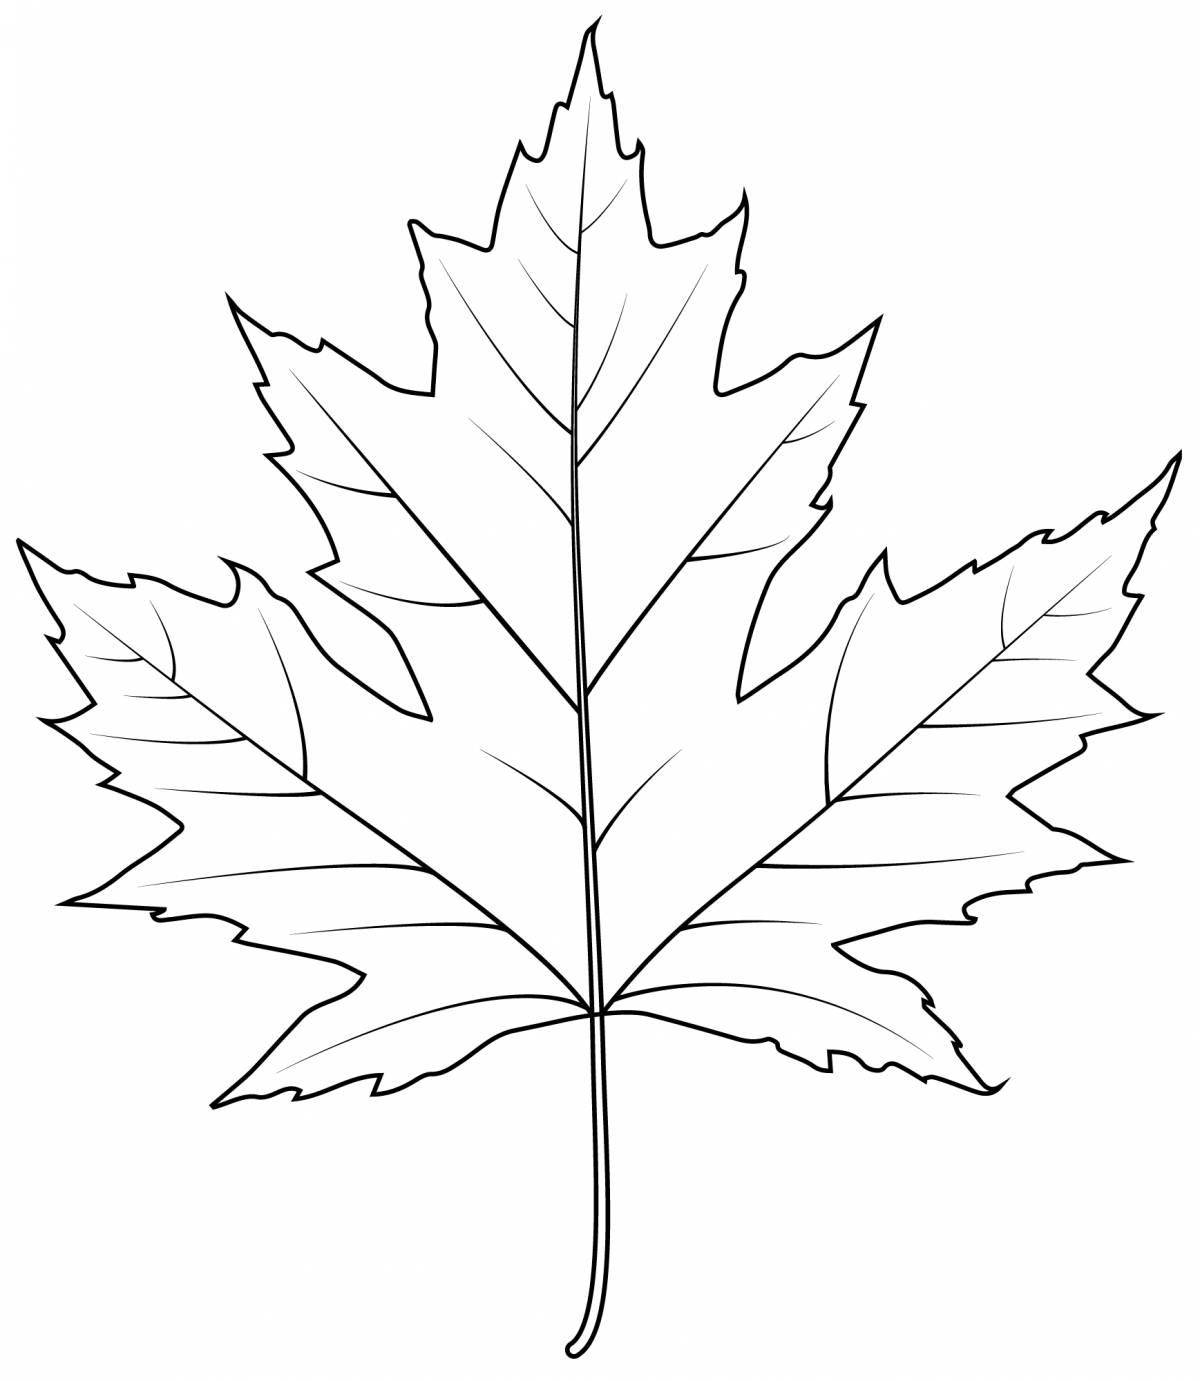 Maple leaf #3